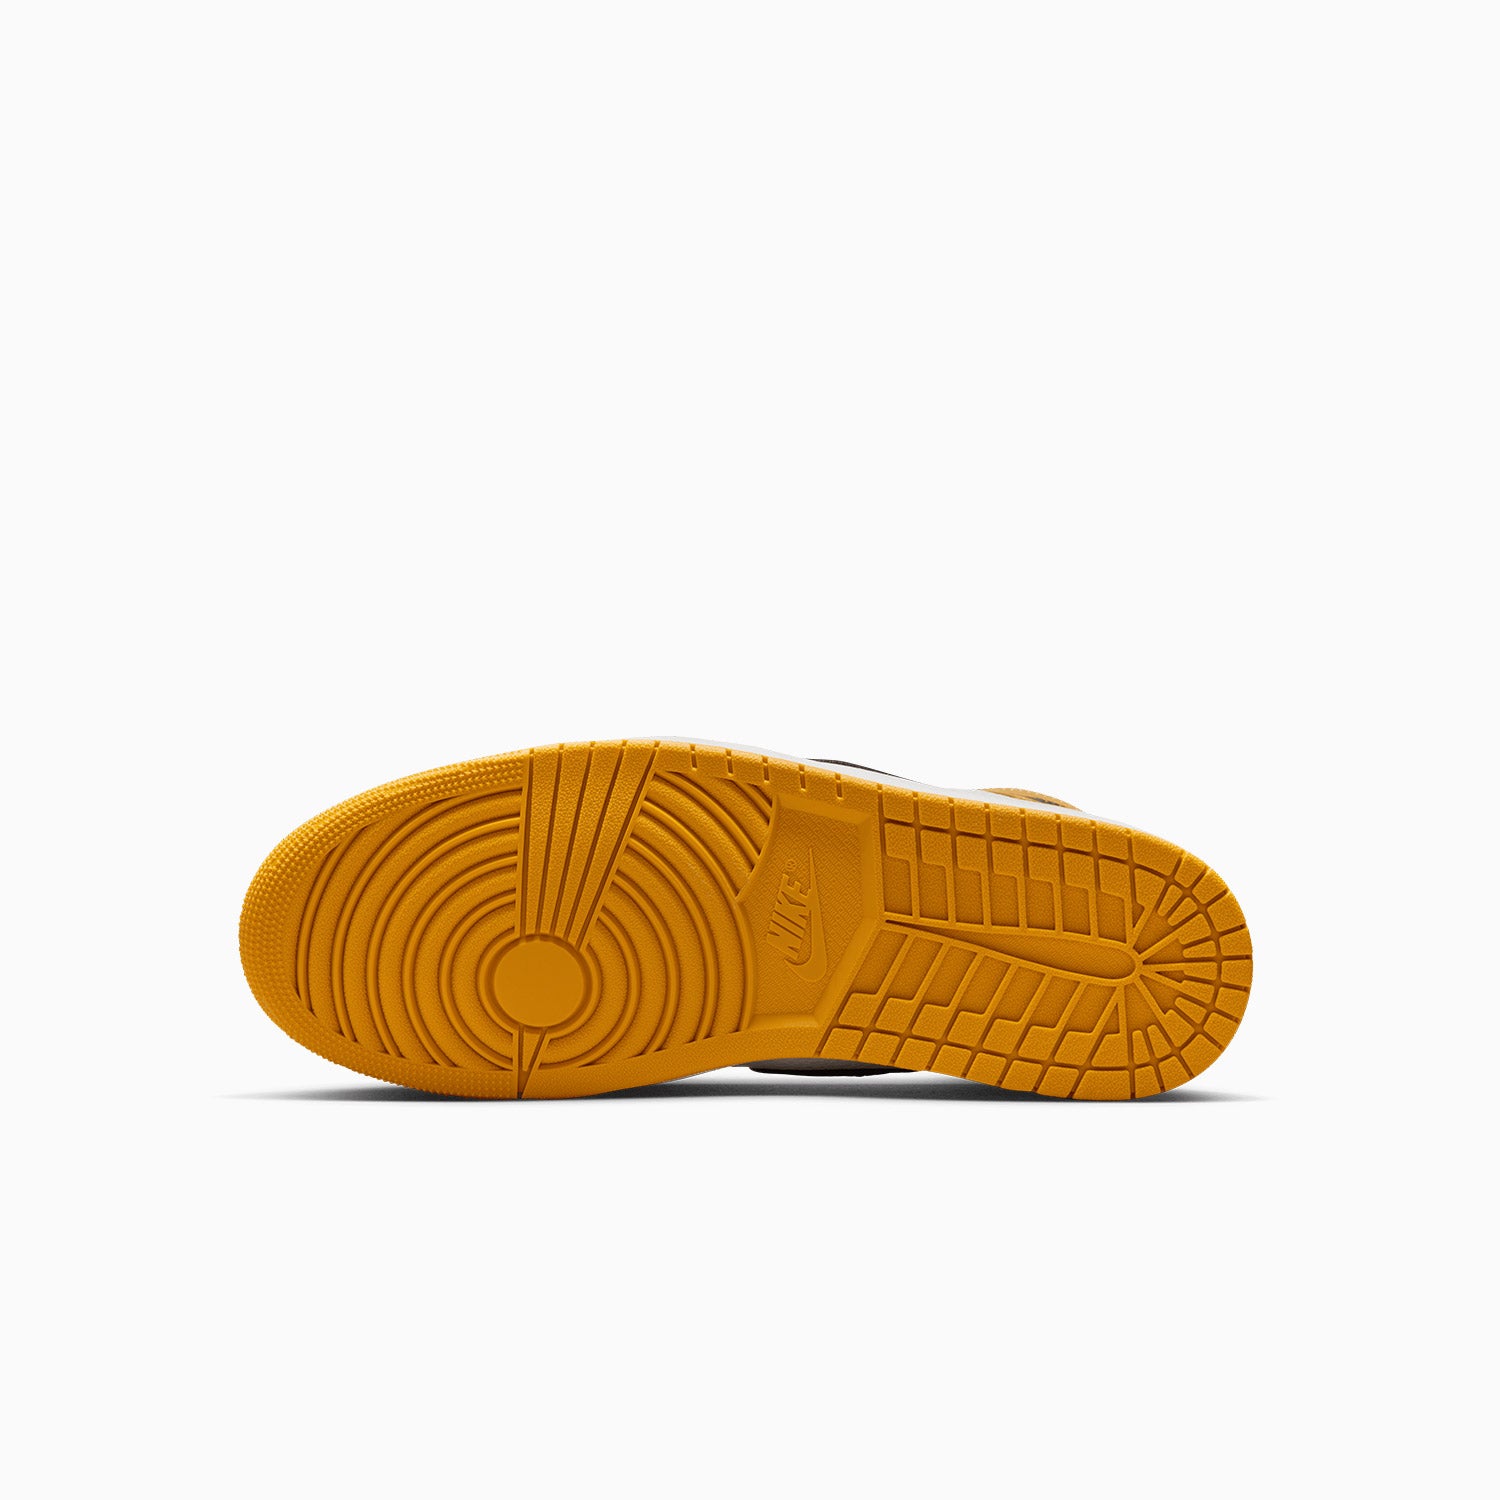 mens-air-jordan-1-retro-high-og-yellow-ochre-shoes-dz5485-701